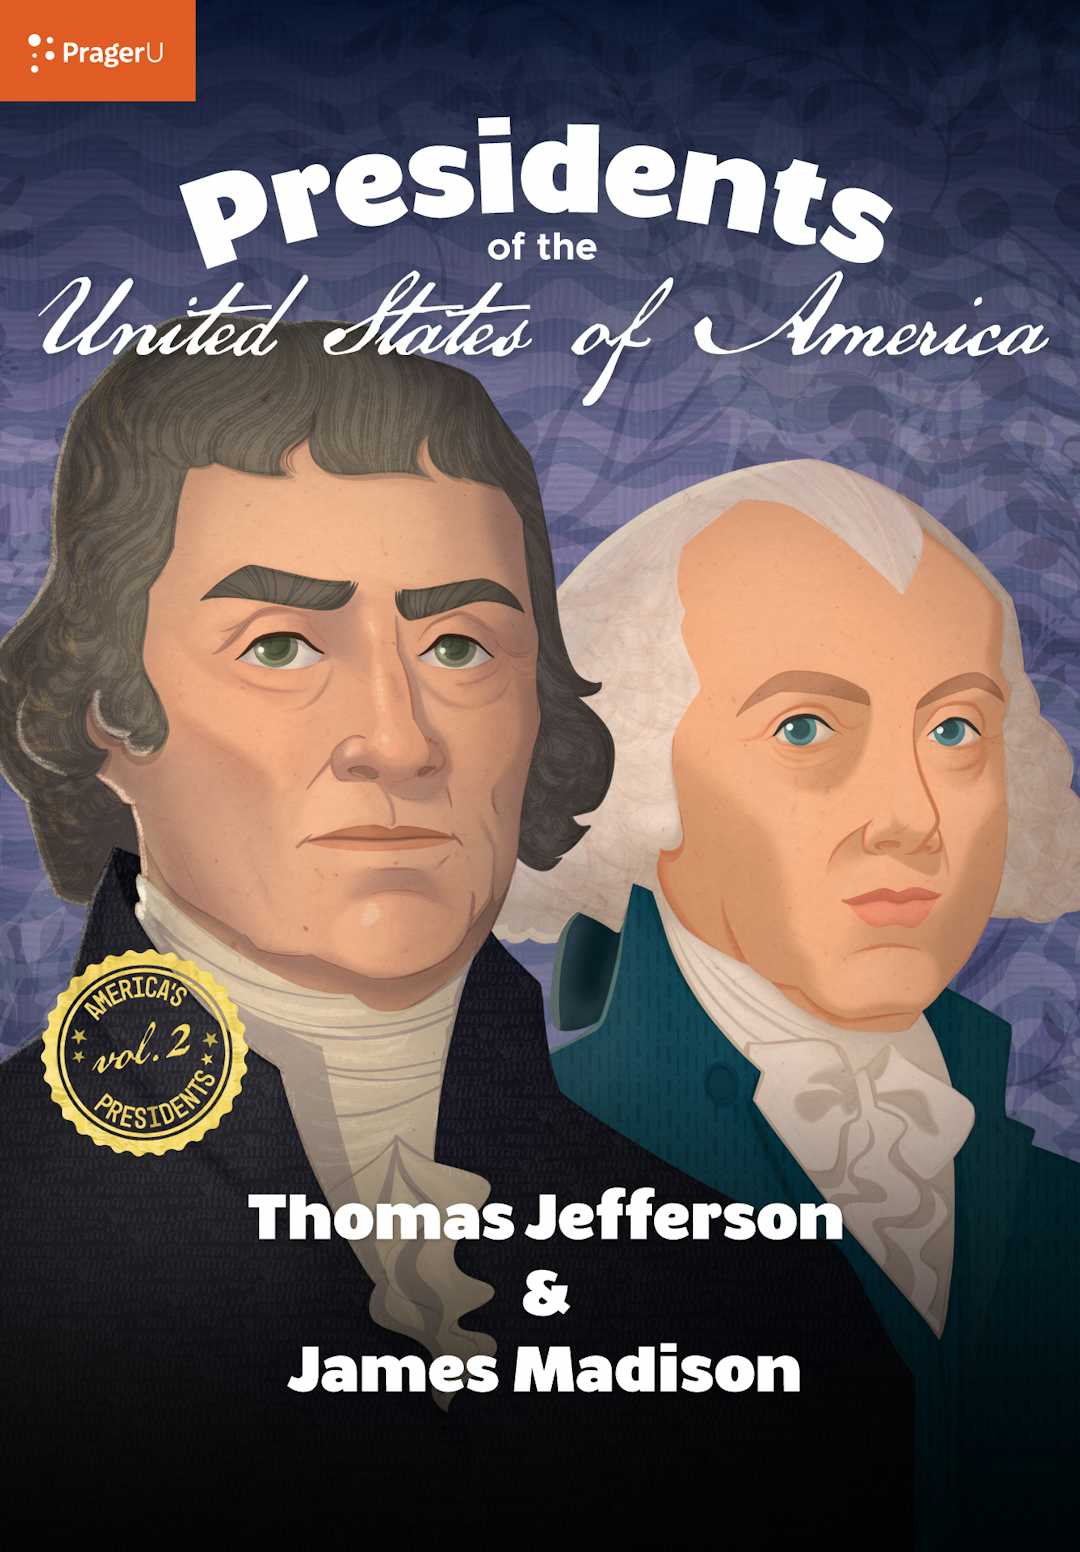 U.S. Presidents Volume 2: Thomas Jefferson & James Madison